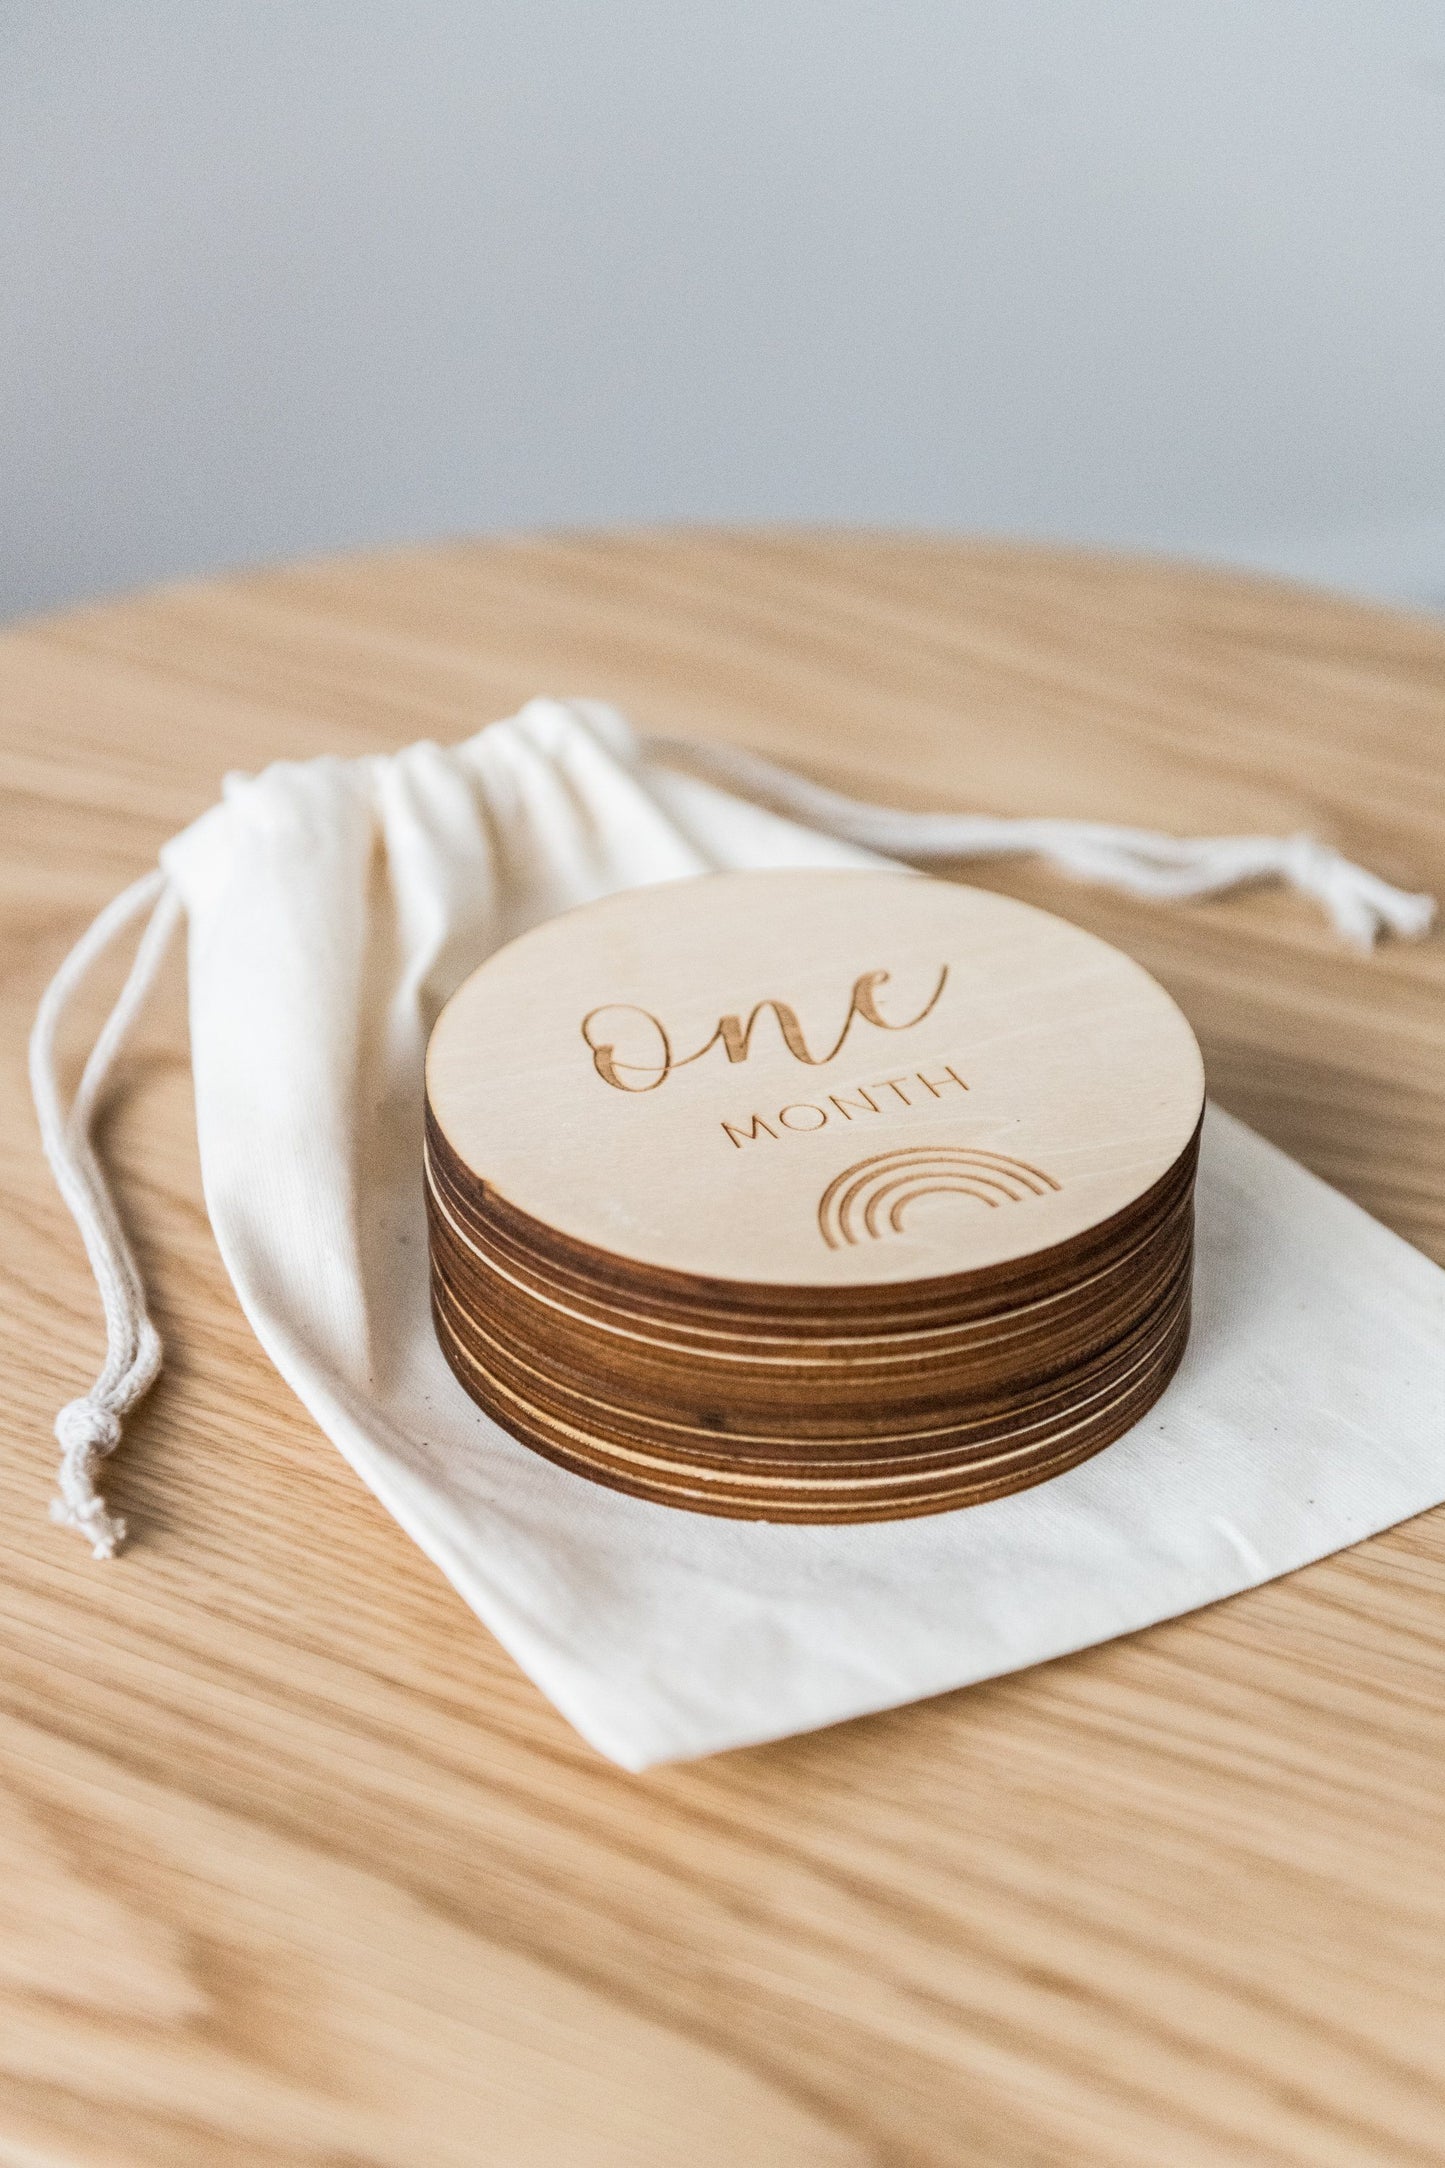 Wooden Milestone Discs - Monthly